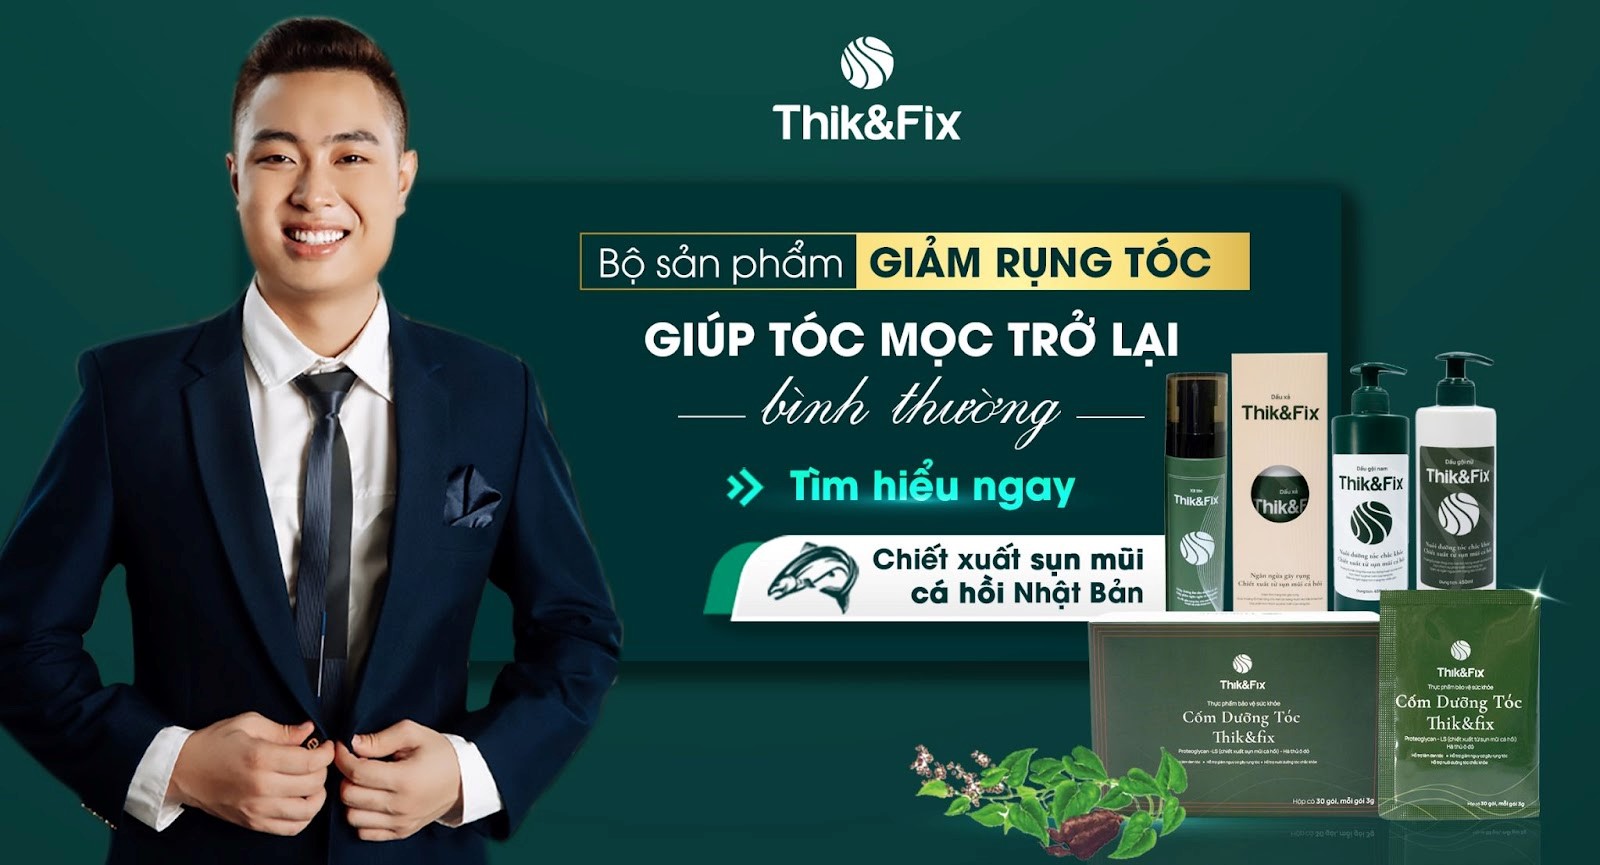 CEO Phạm Văn Hải và hành trình tâm huyết với Thik&Fix - thương hiệu chăm sóc tóc toàn diện